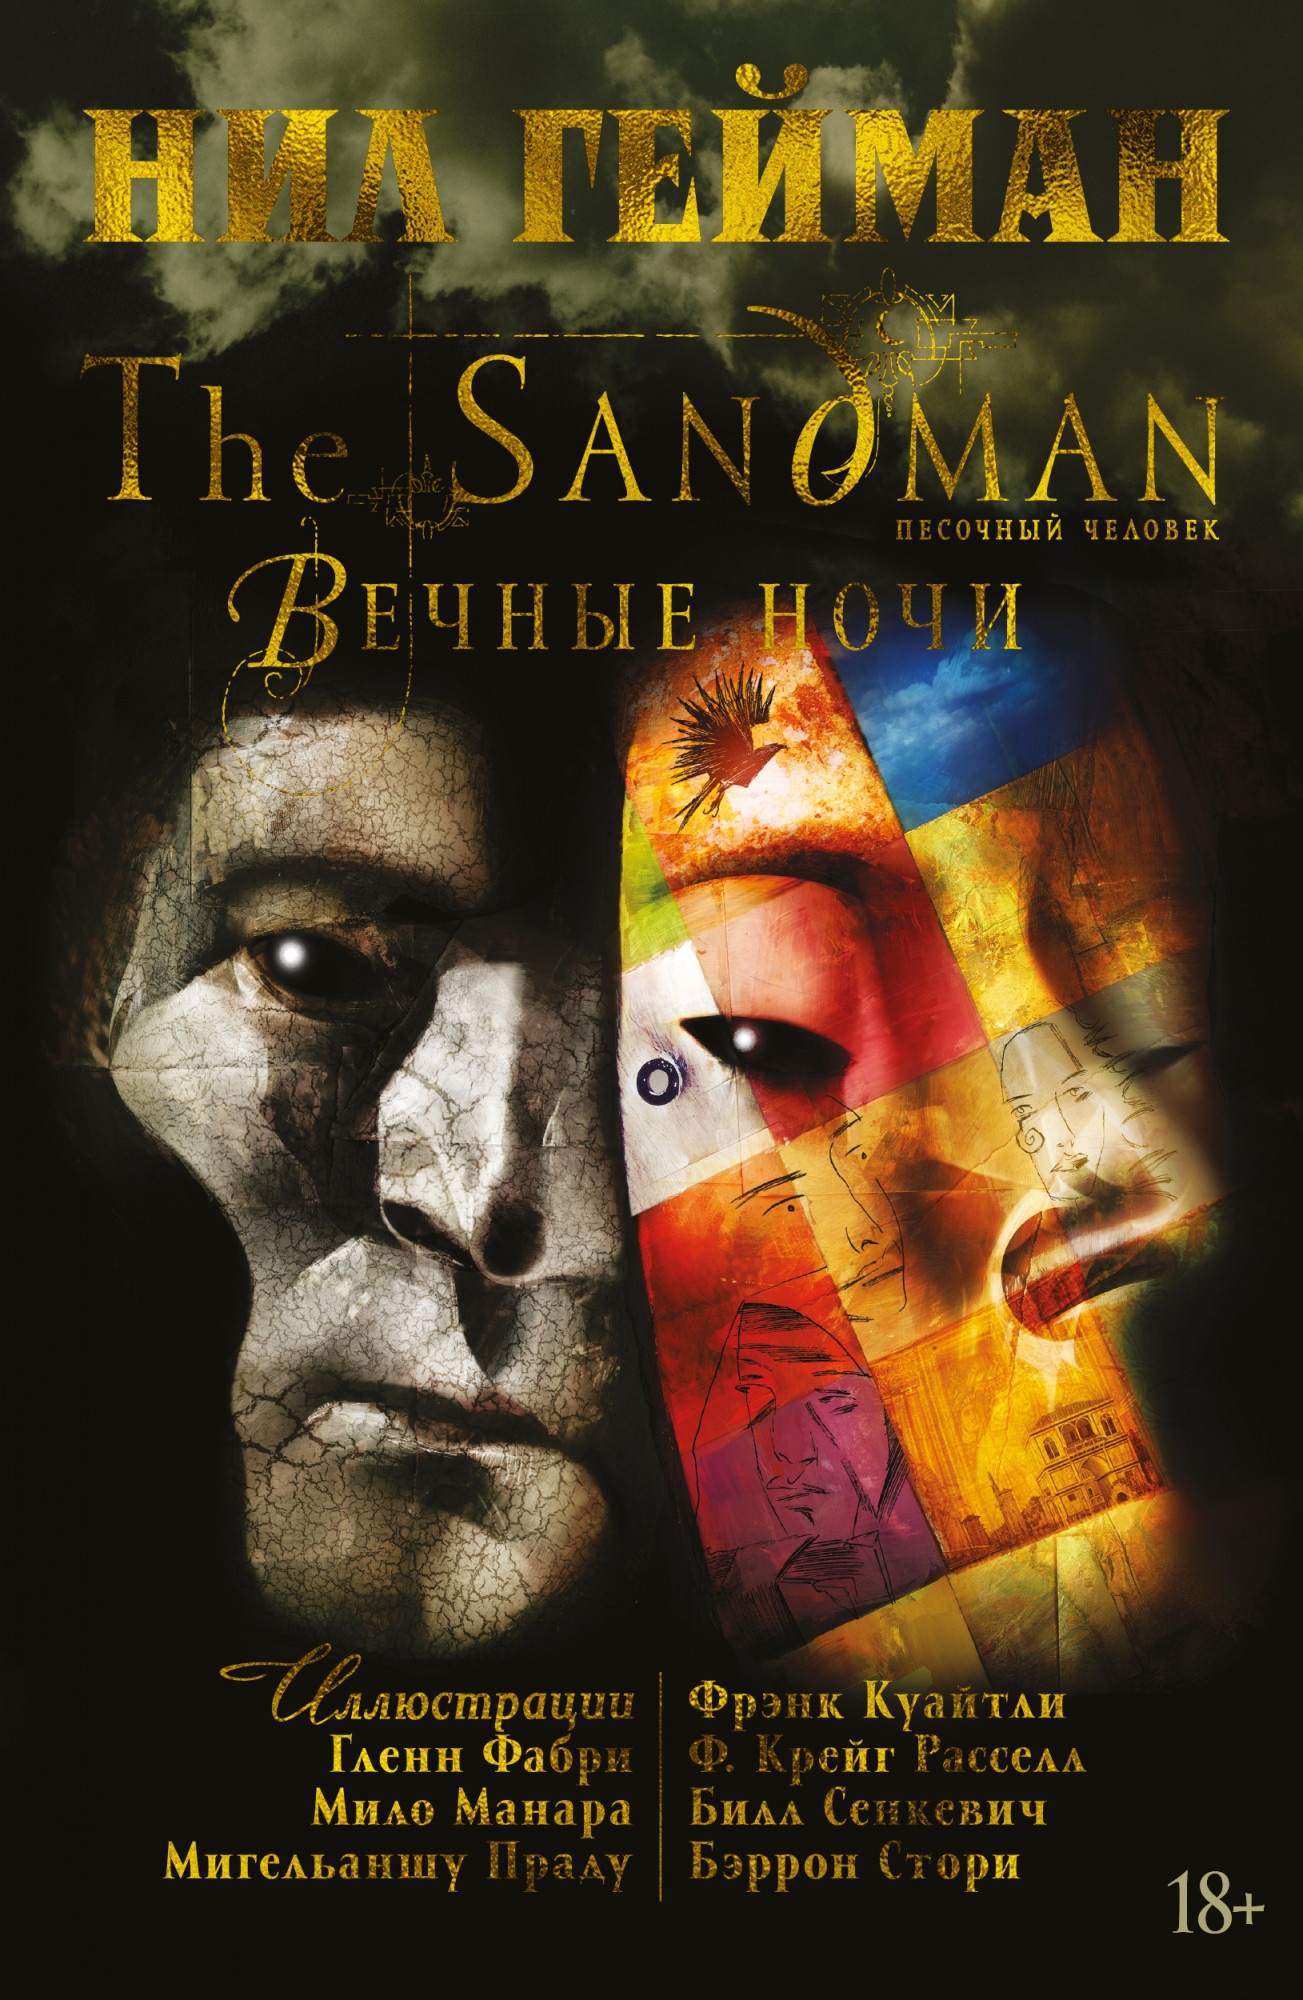 Книга «The Sandman. Песочный человек. Вечные ночи» Нил Гейман — 2020 г.